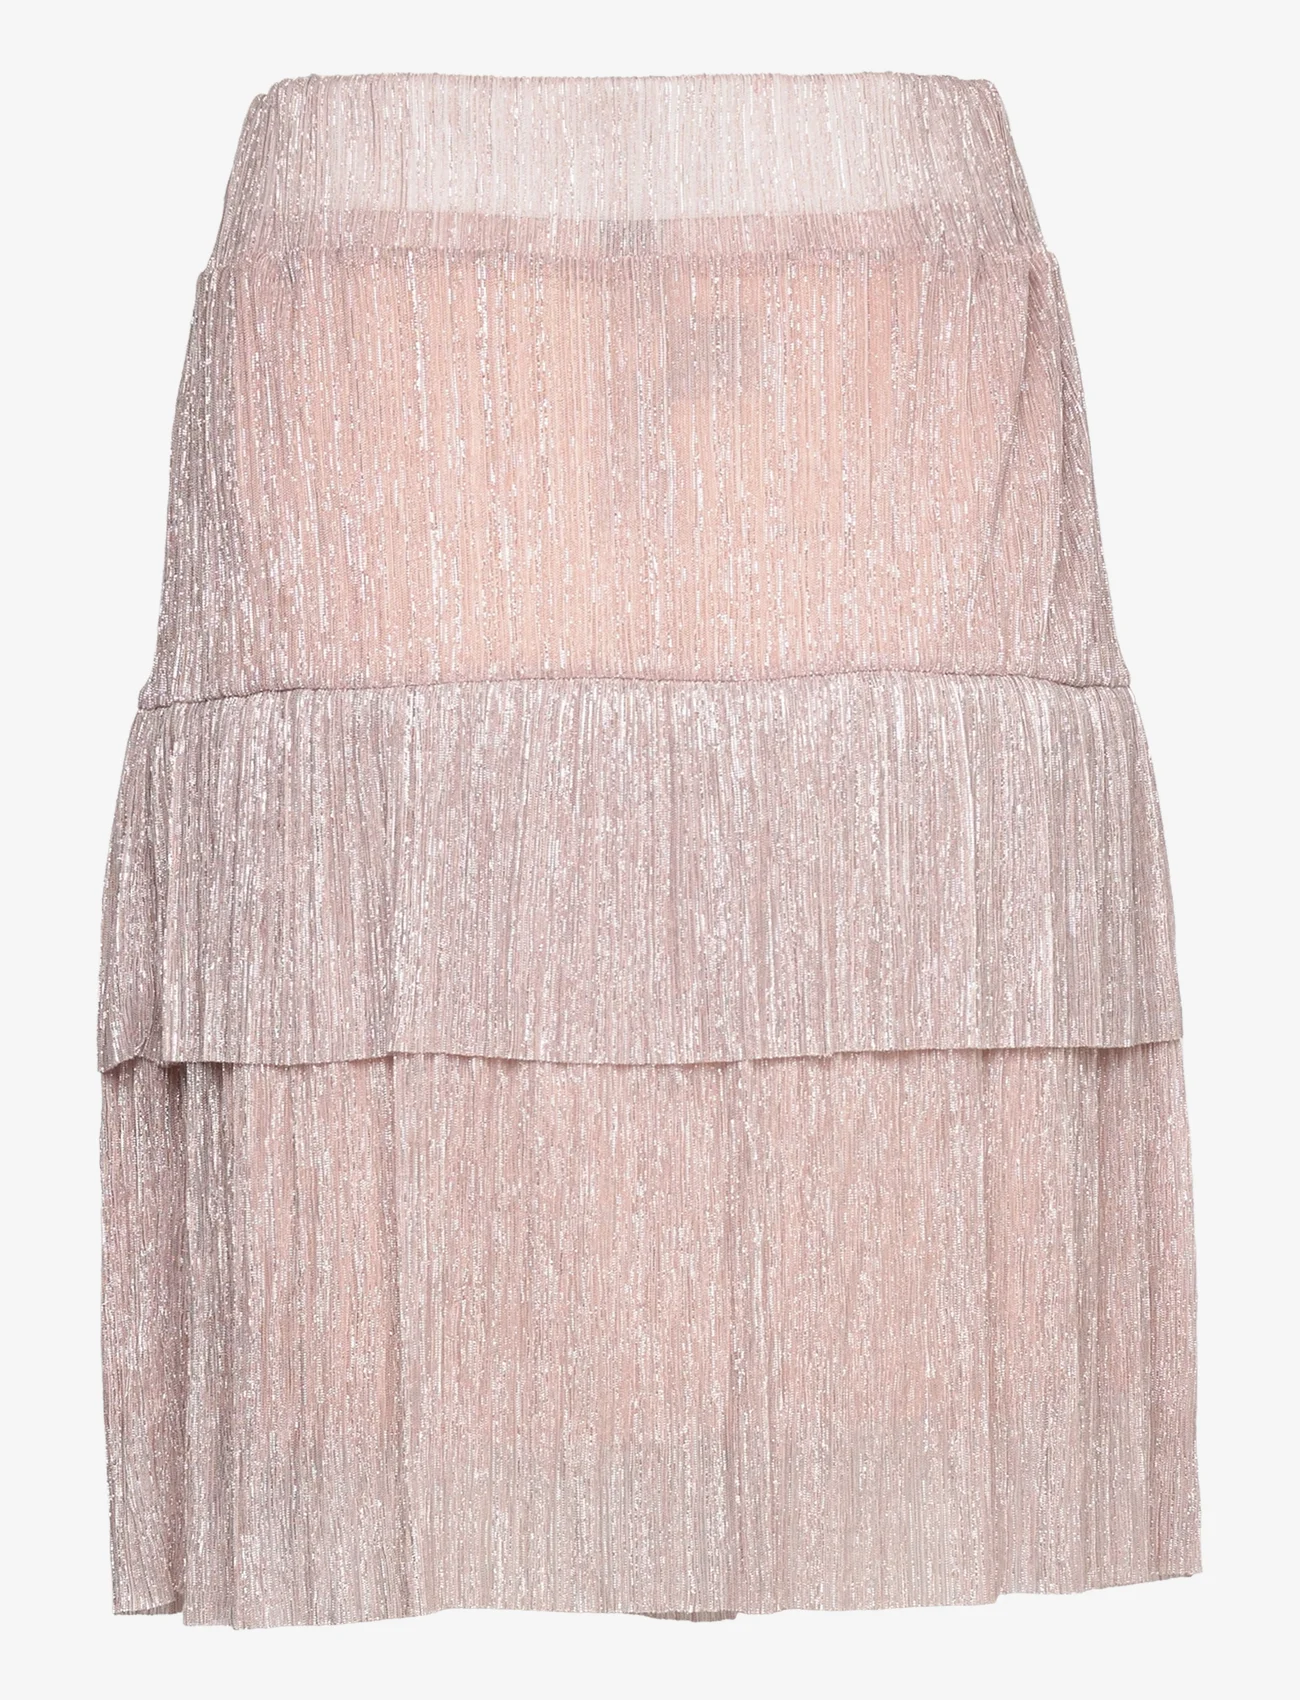 Noella - Caly Skirt - korte nederdele - rose w. silver - 1